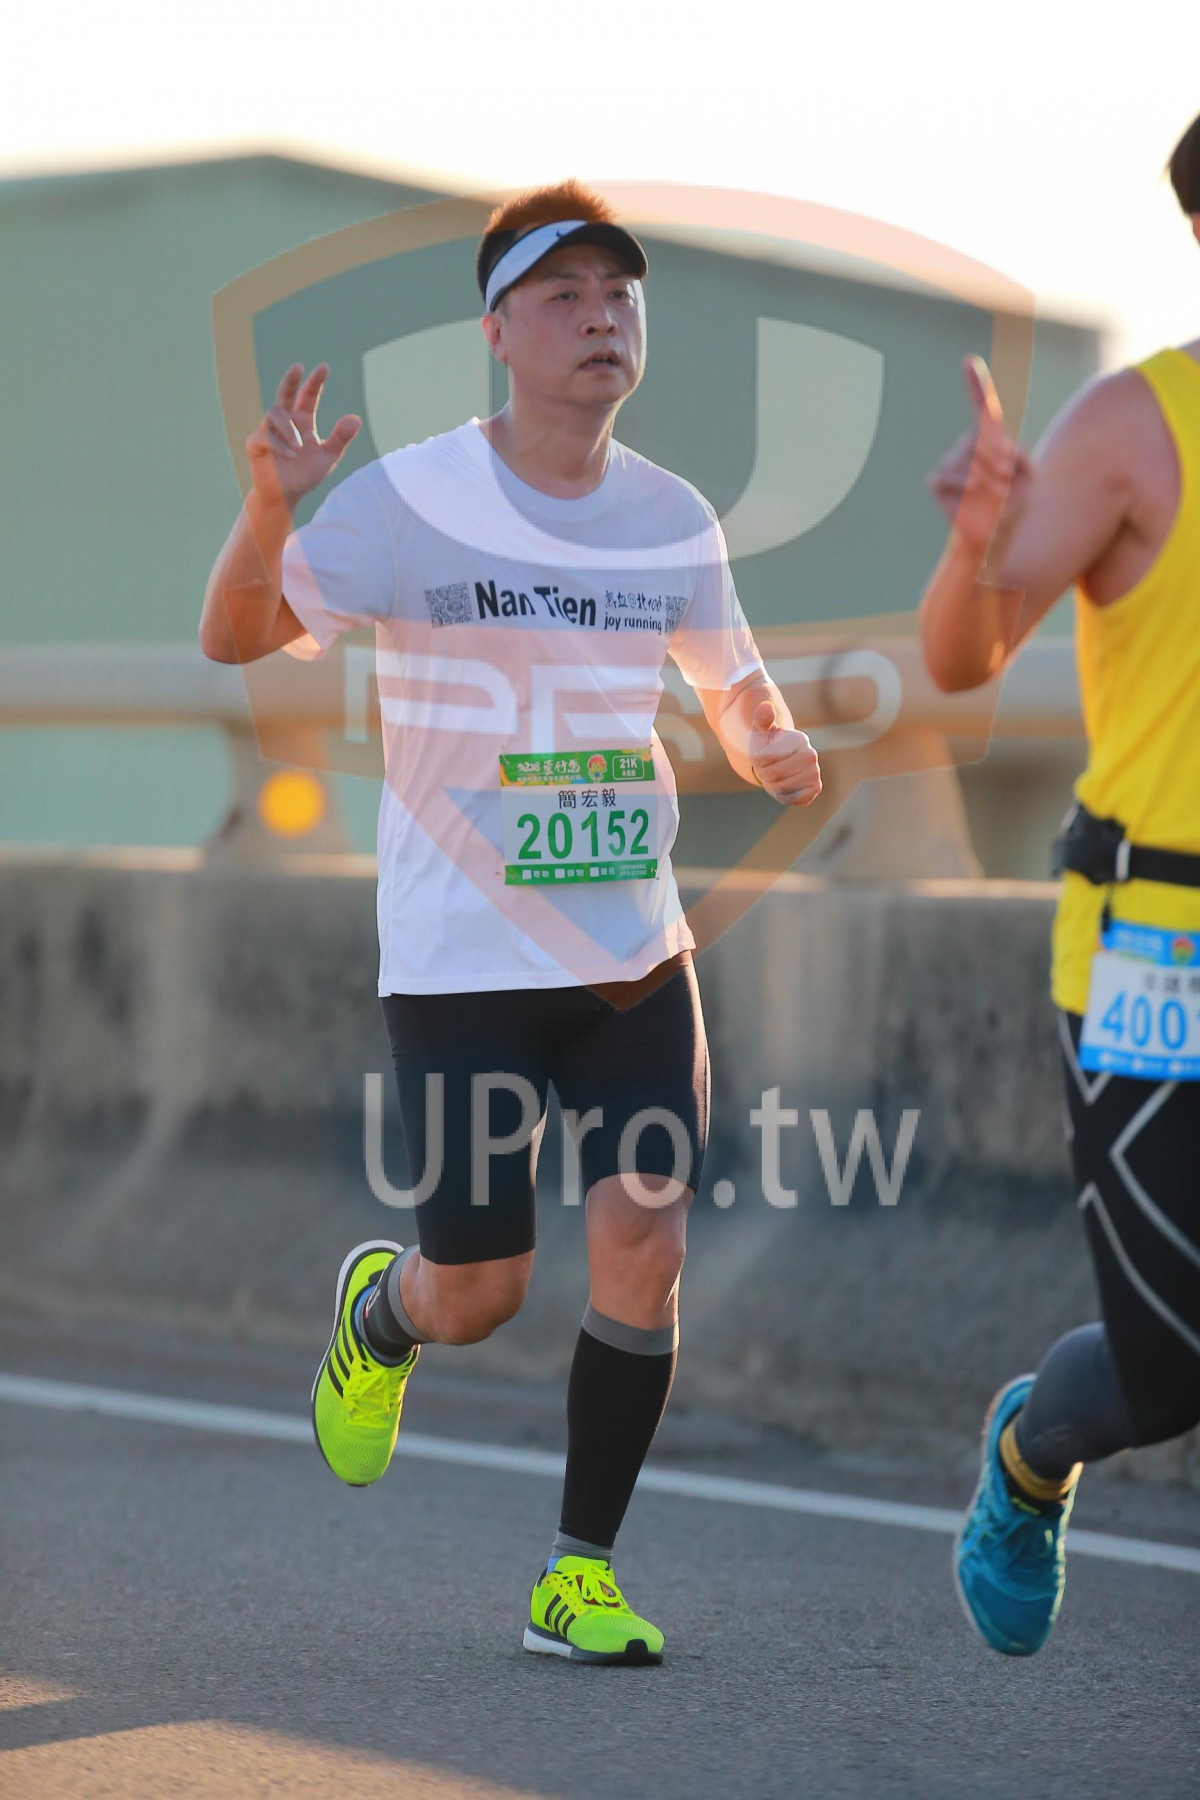 joy running,,20152,400|06:40-06:59|jay lee